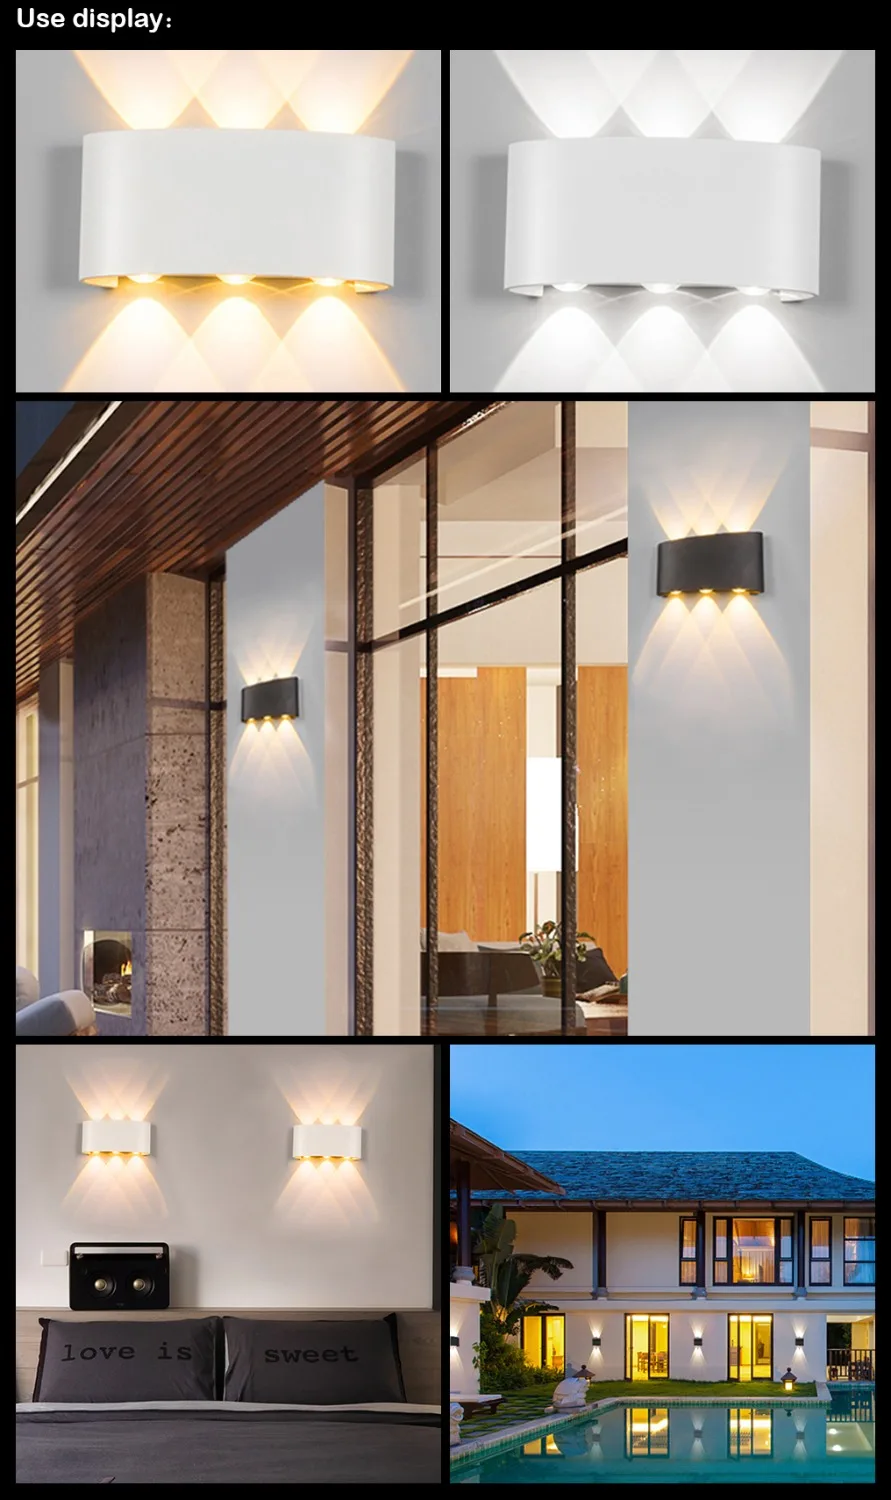 Скандинавское современное 6 Вт 8 Вт светодиодное зеркало освещение для помещений и улицы настенный водонепроницаемый вверх вниз настенная лампа для балкона Ванная Комната Патио освещение